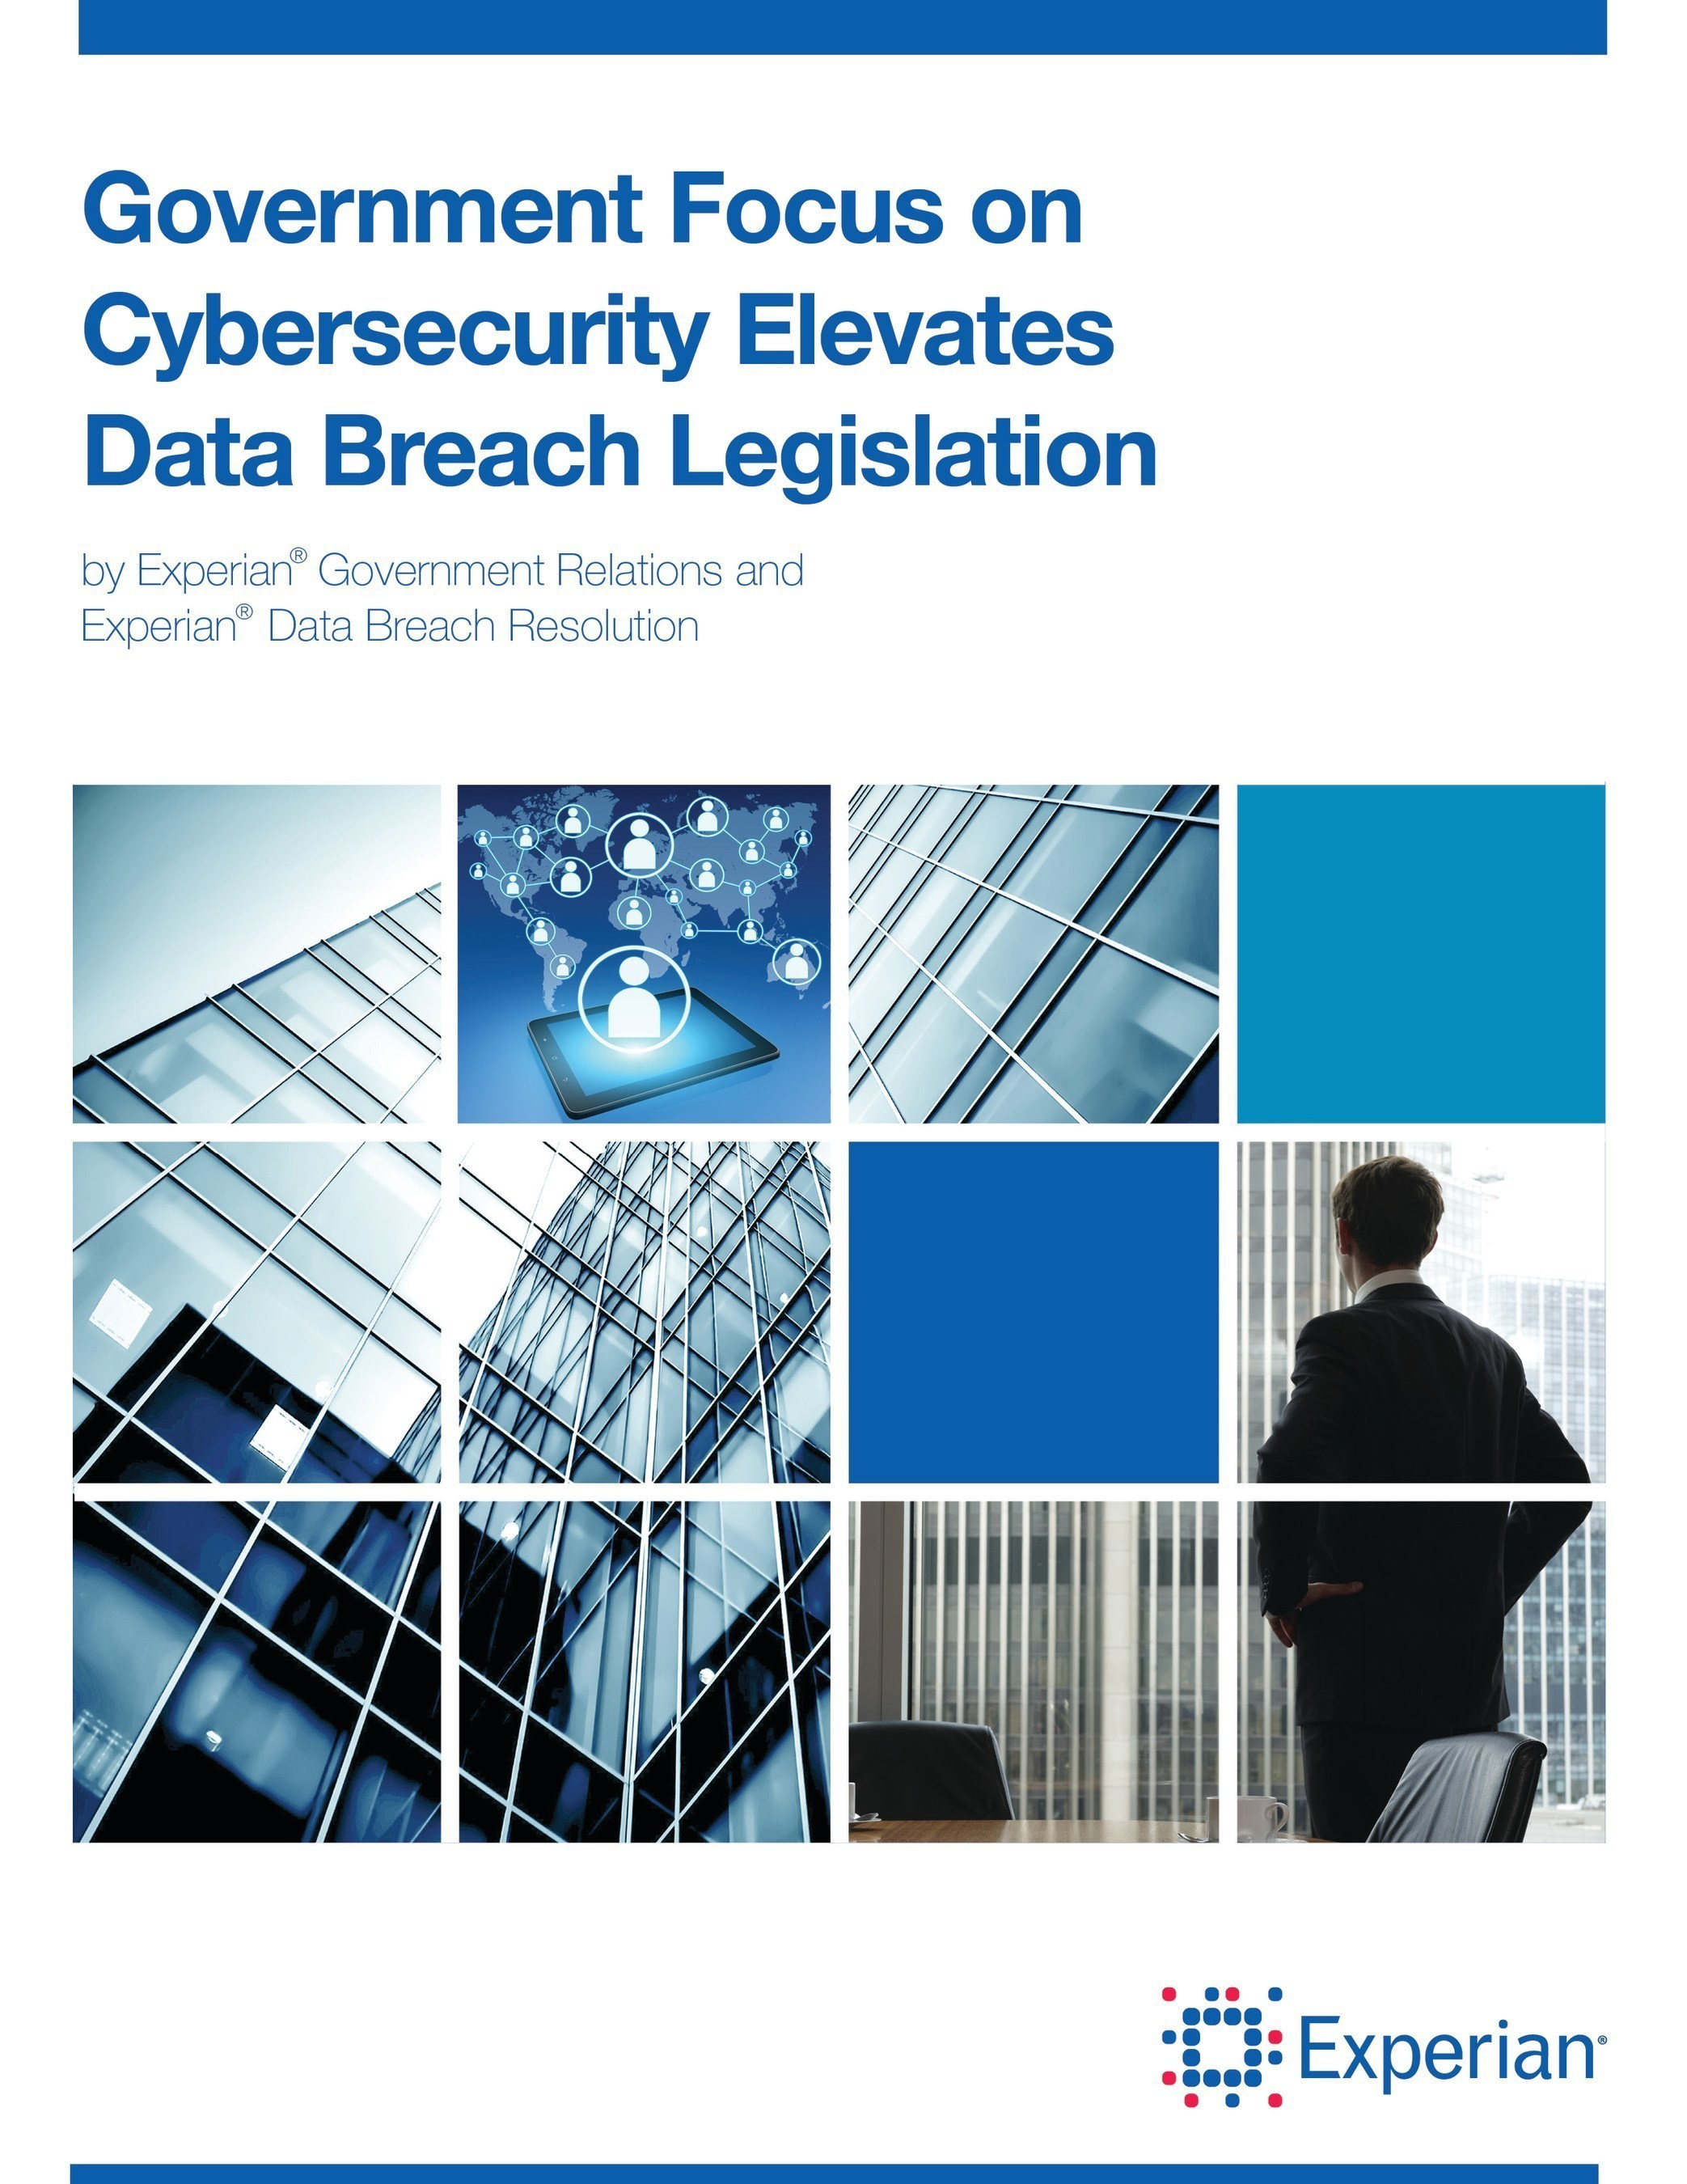 Experian Data Breach Resolution policy paper provides insight into data breach legislation